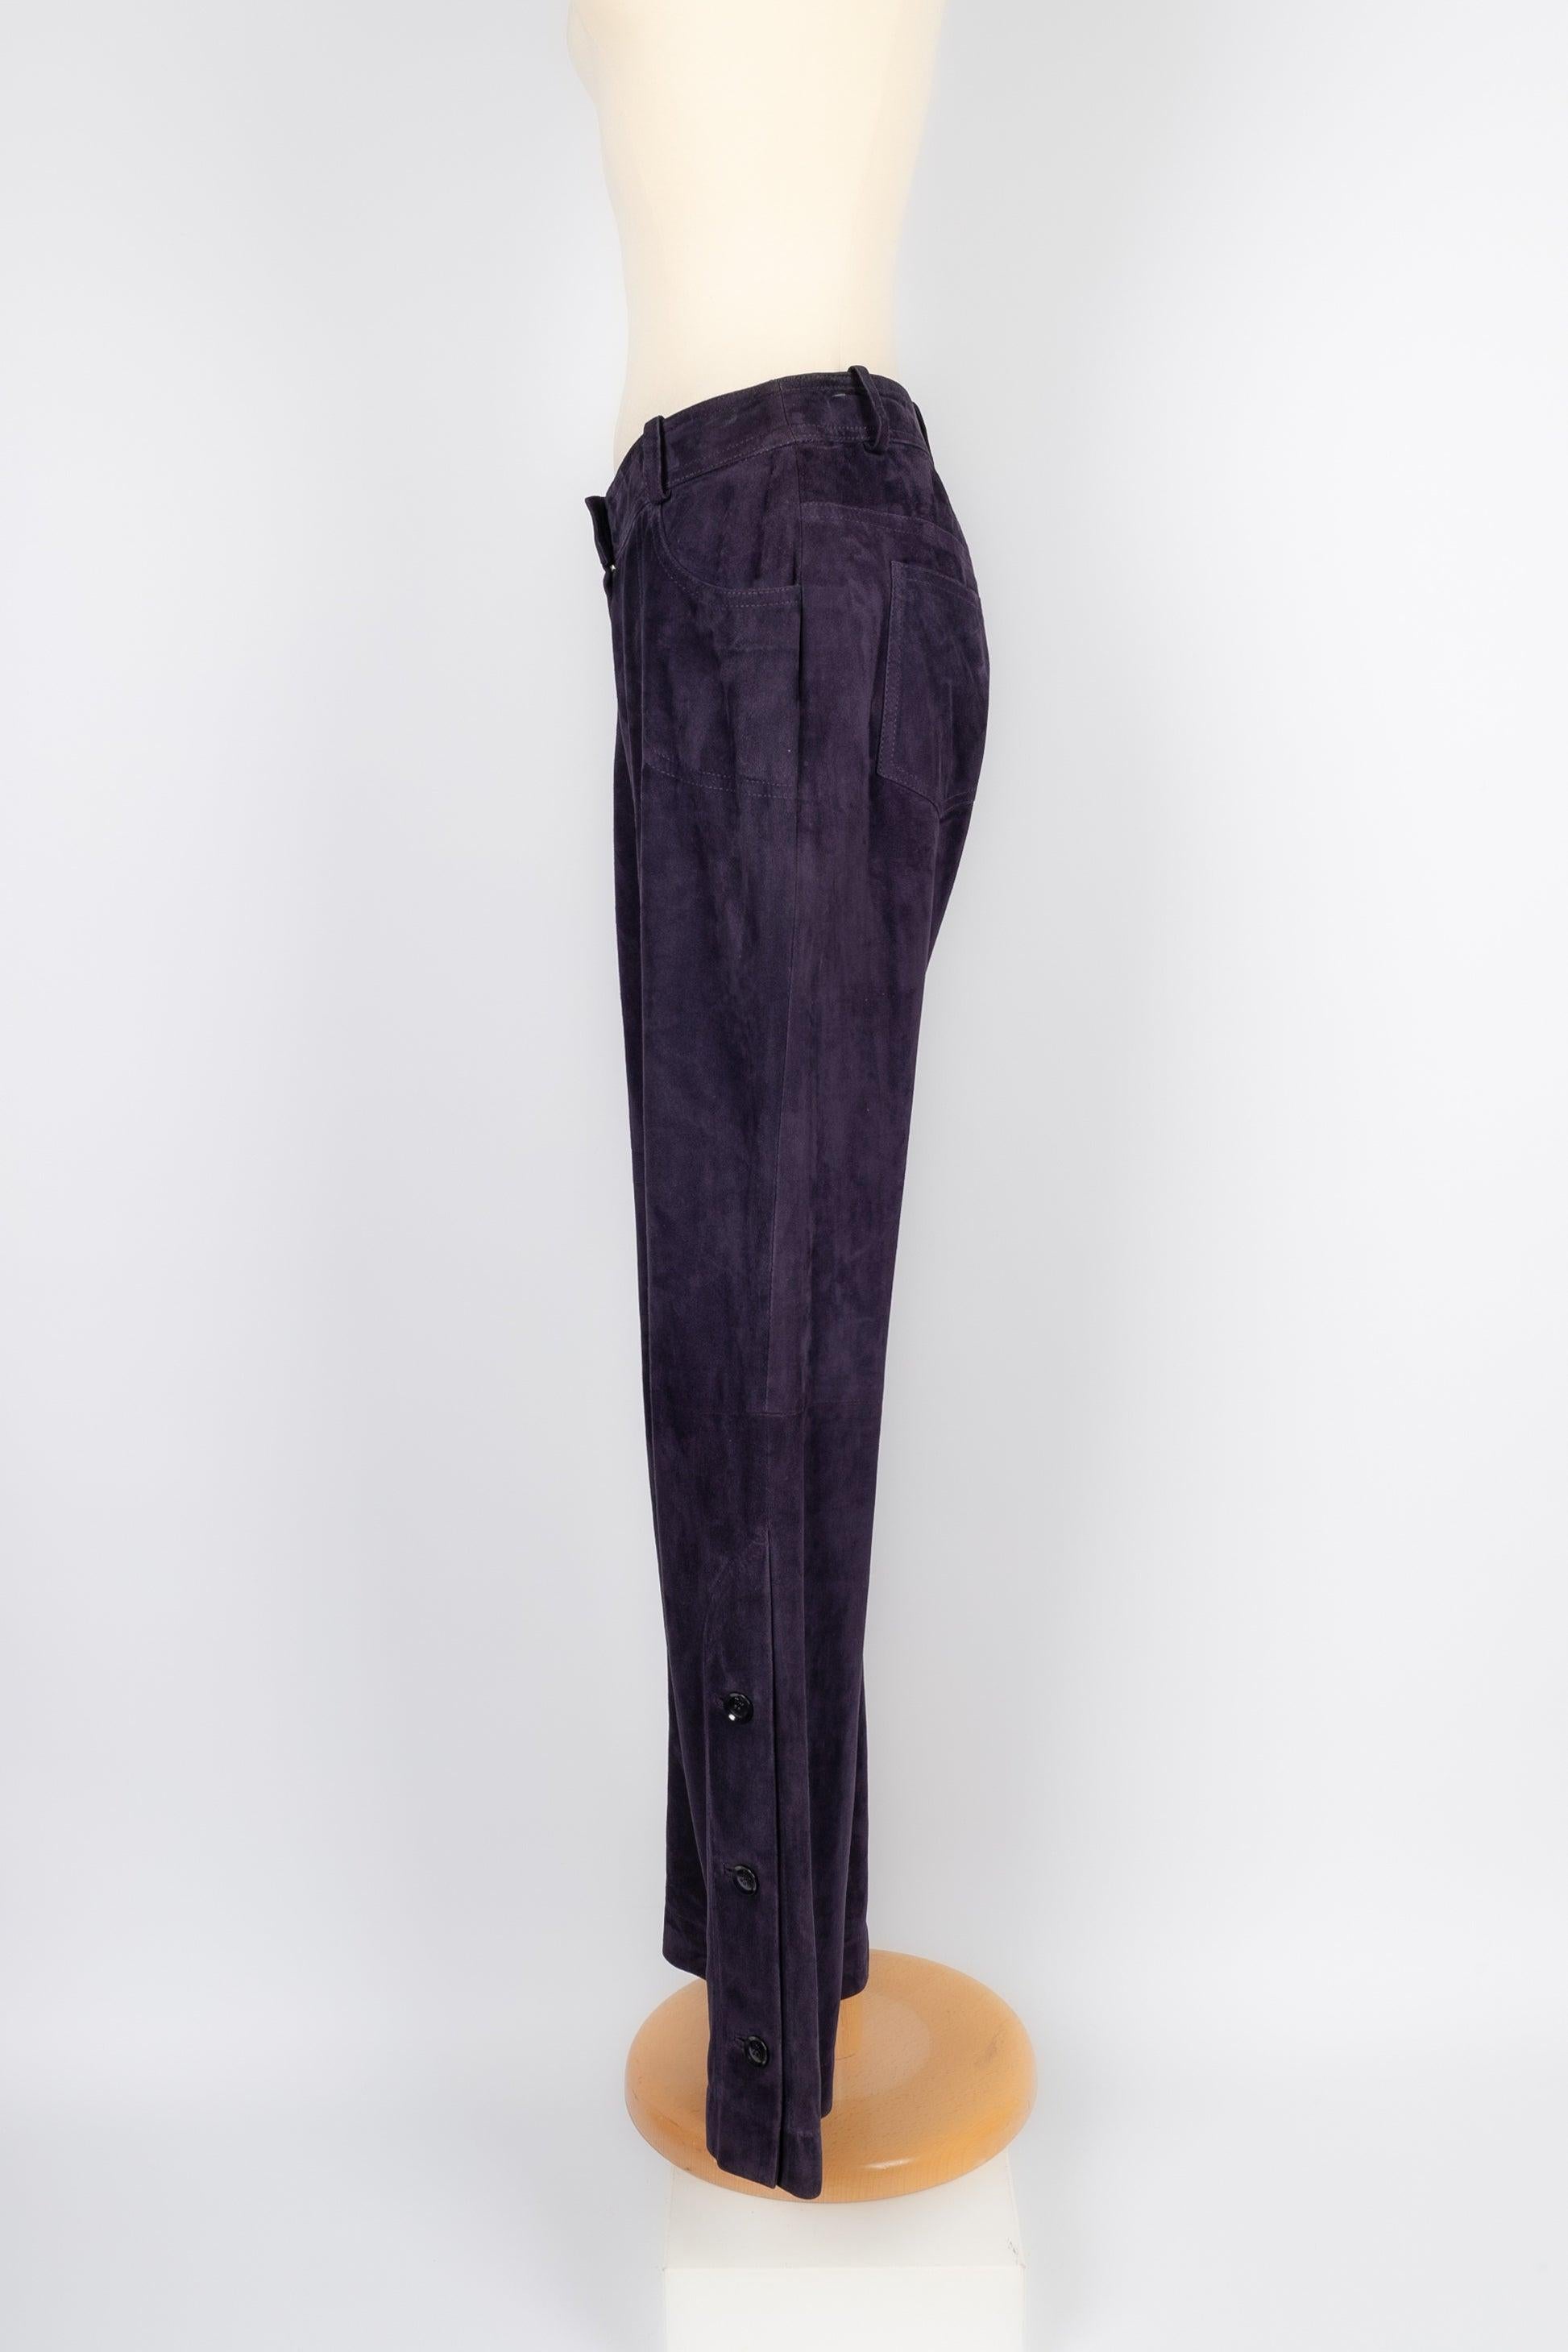 Dior - (Made in France) Pantalon en daim violet orné de boutons sur le bas du pantalon. Taille 38FR indiquée.

Informations complémentaires :
Condit : Bon état
Dimensions : Taille : 38 cm - Hanches : 45 cm - Longueur : 100 cm

Référence du vendeur :